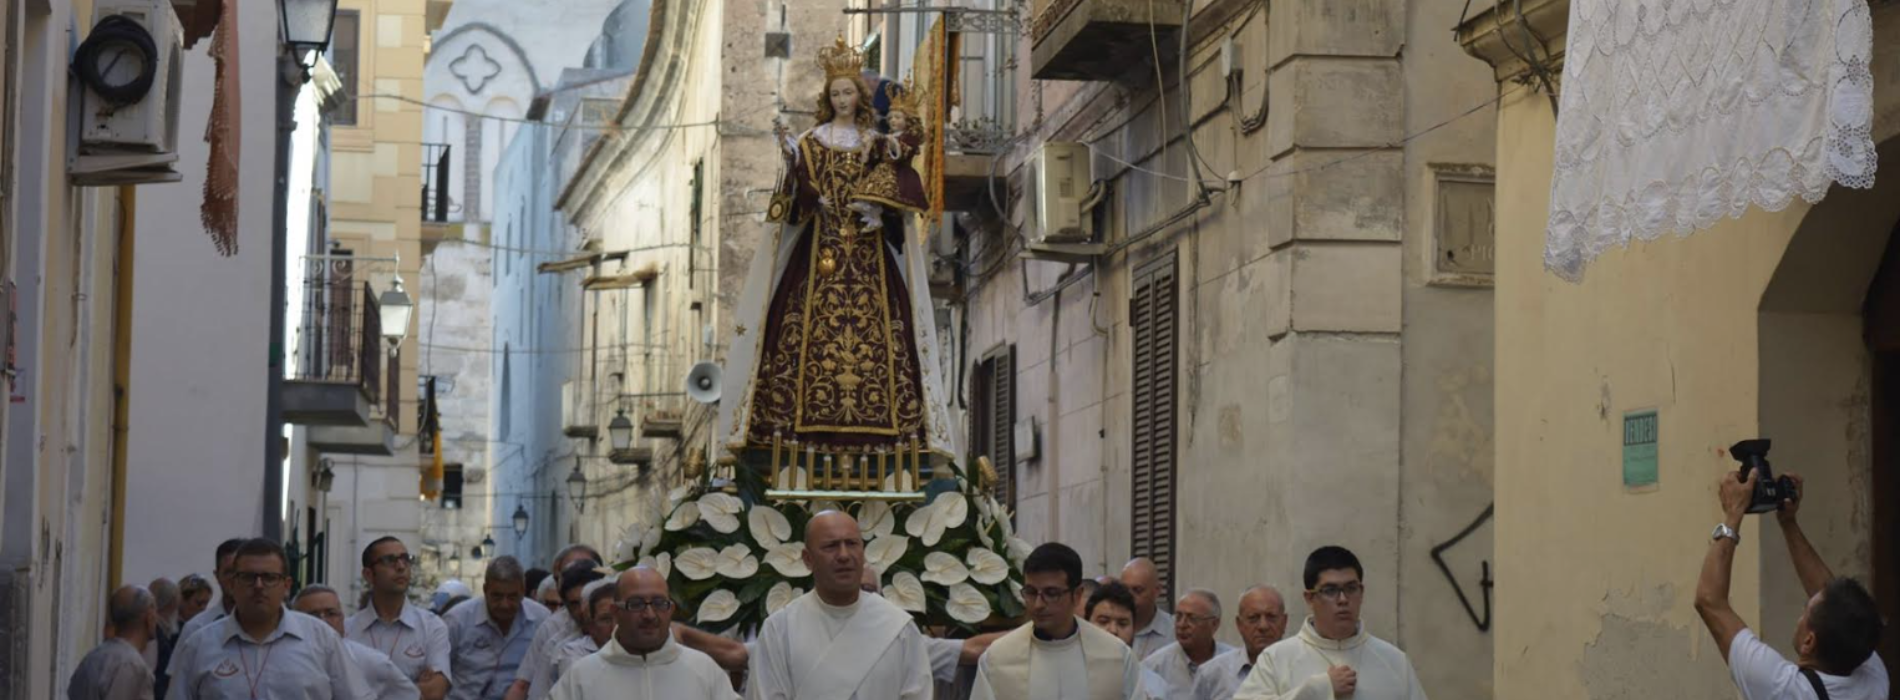 Madonna del Carmine, Capua si prepara ai festeggiamenti